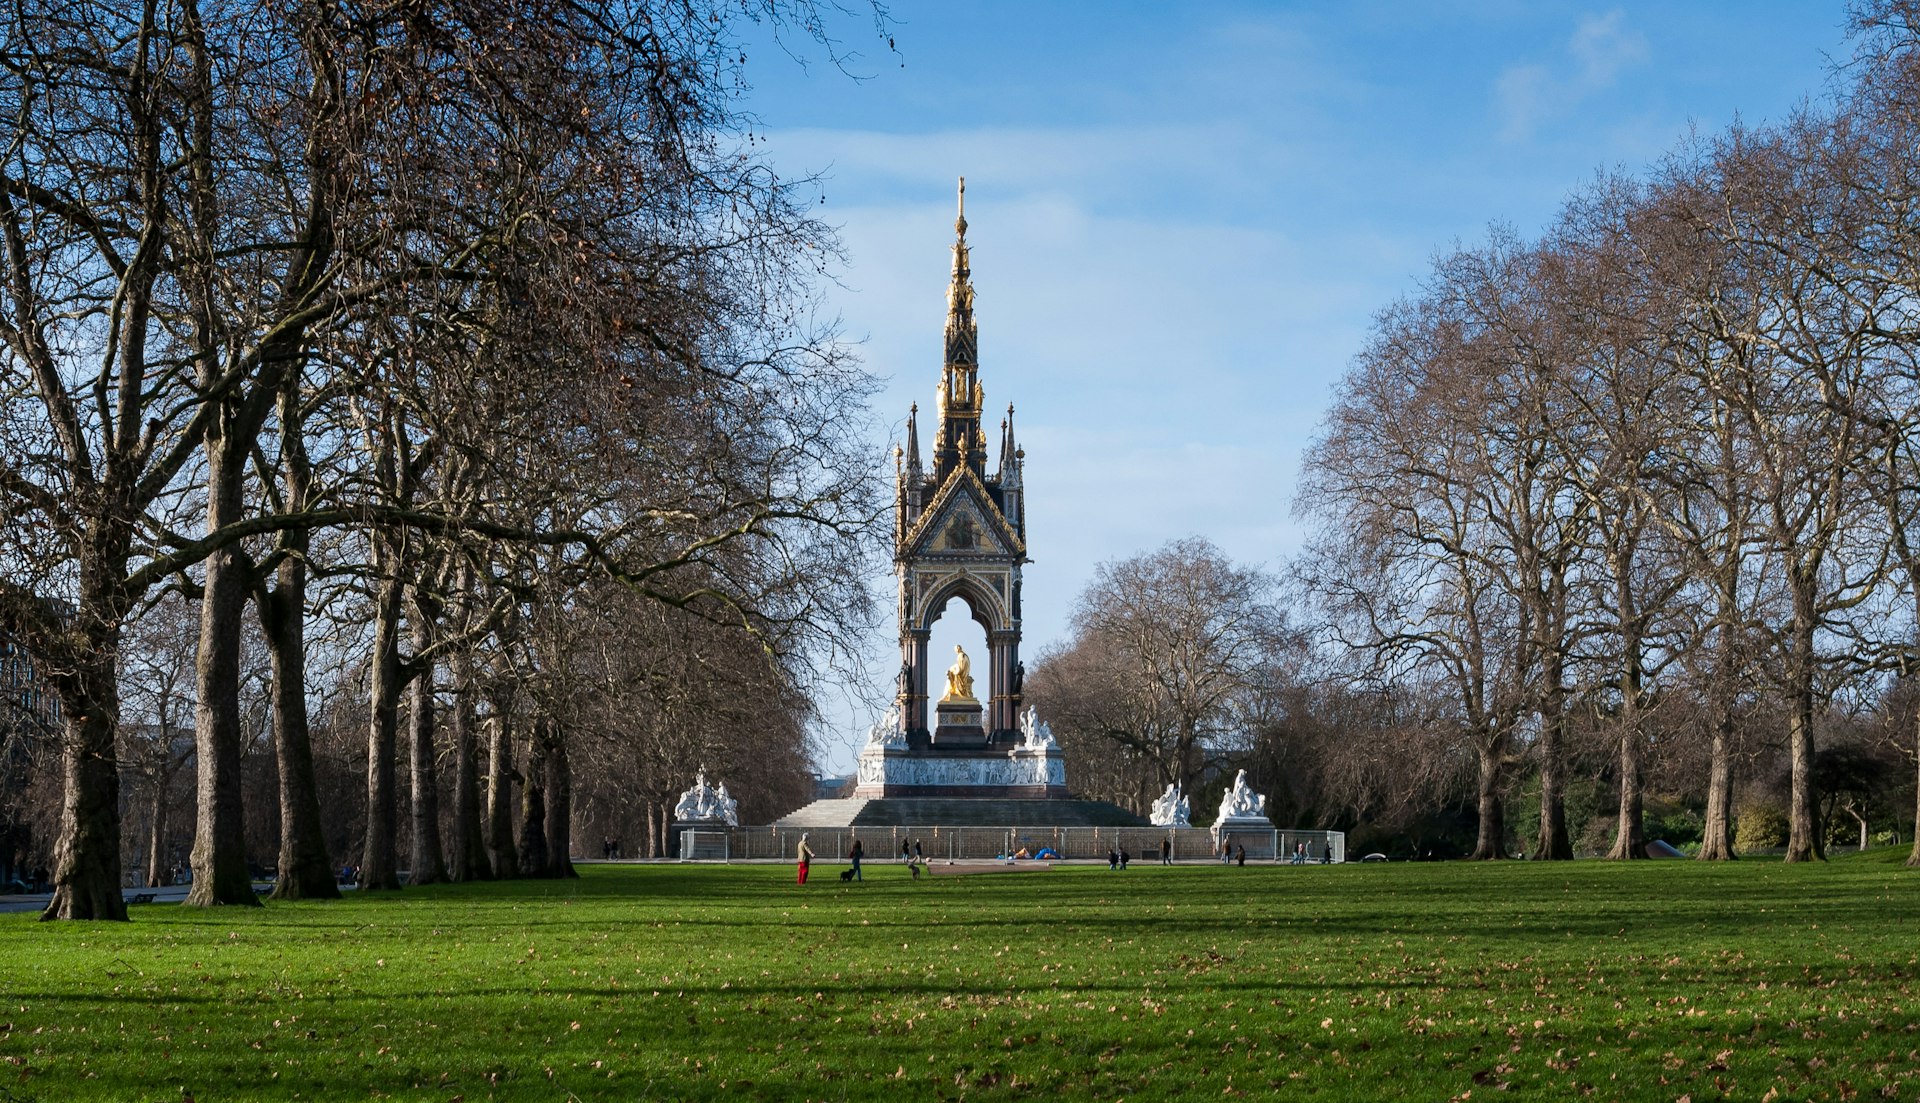 The Albert Memorial in Hyde Park, London in winter